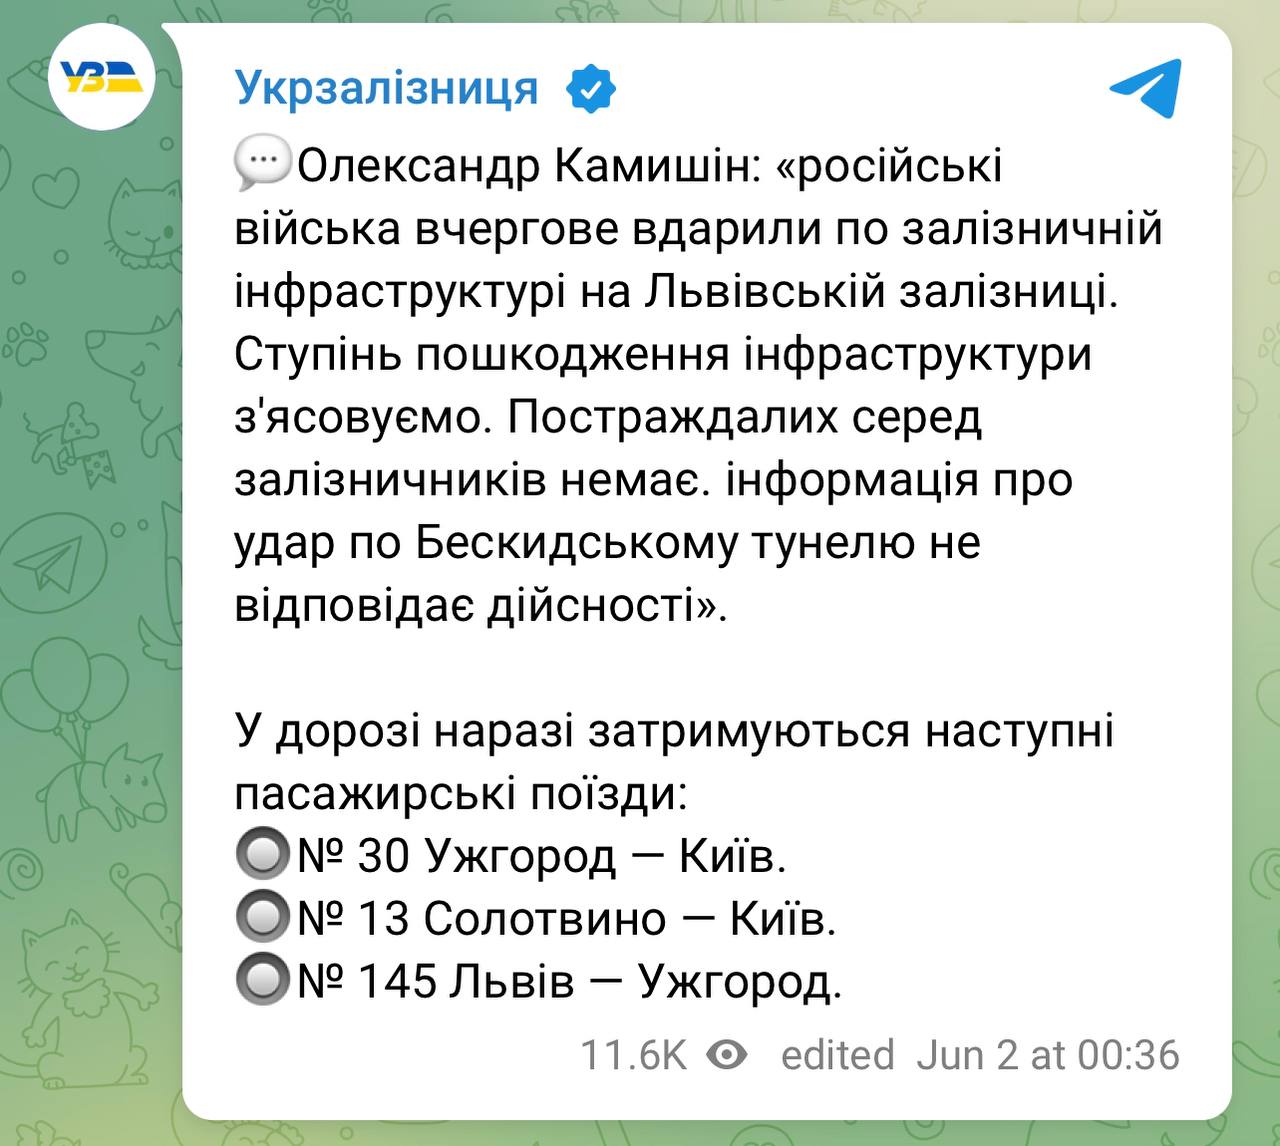 Труха телеграмм украина на русском языке смотреть онлайн бесплатно фото 61